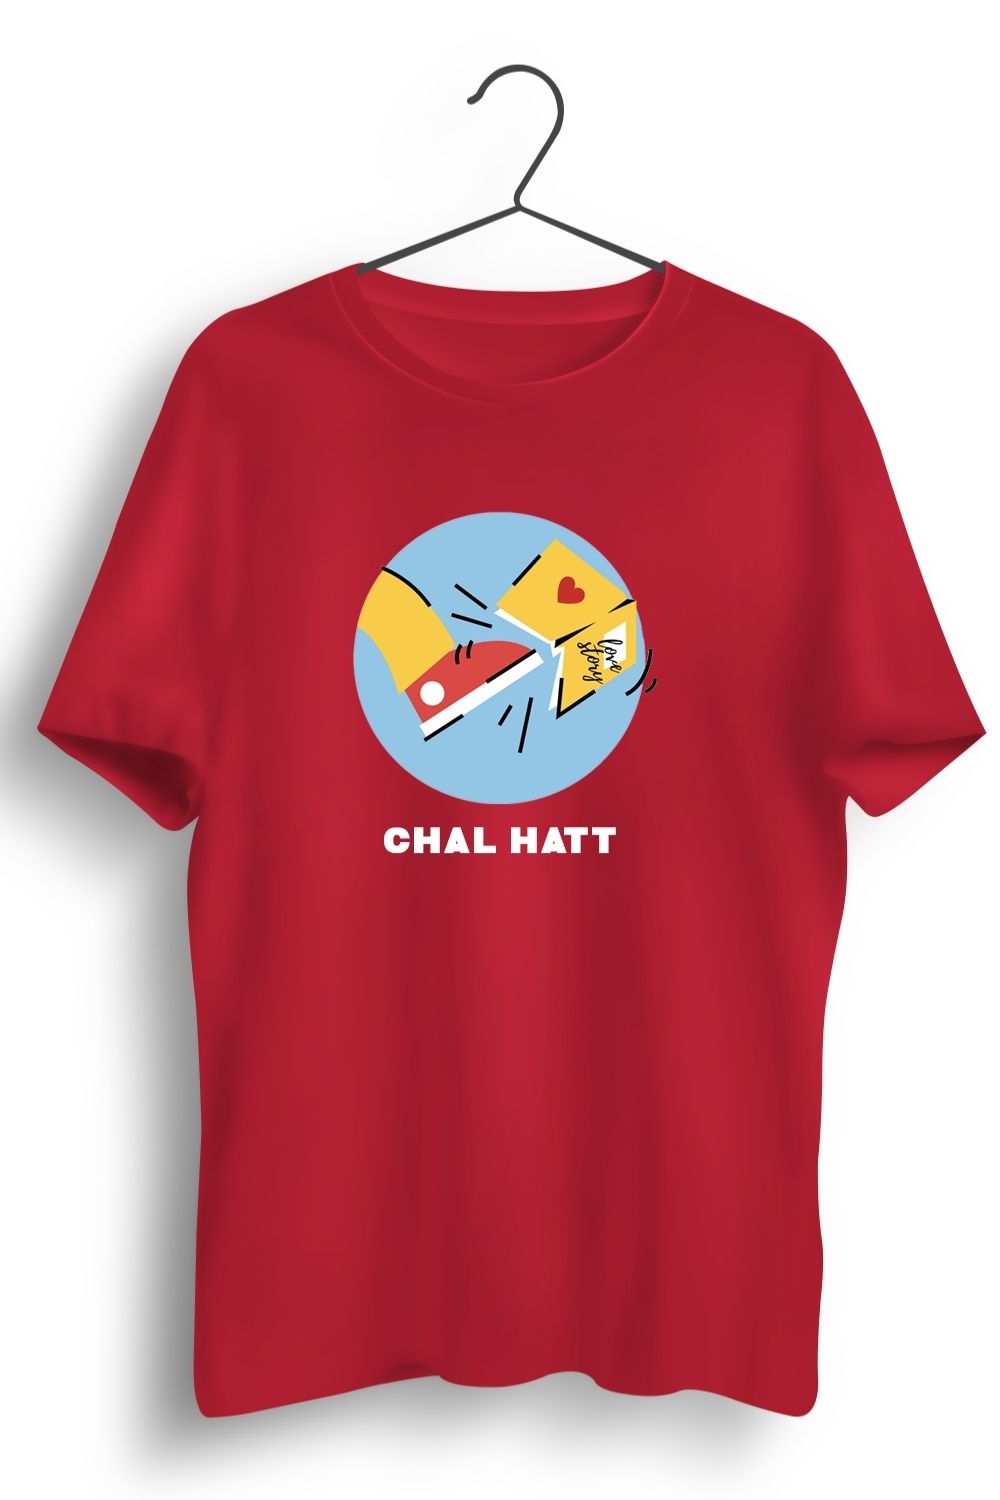 Chal Hatt Graphic Printed Red Tshirt